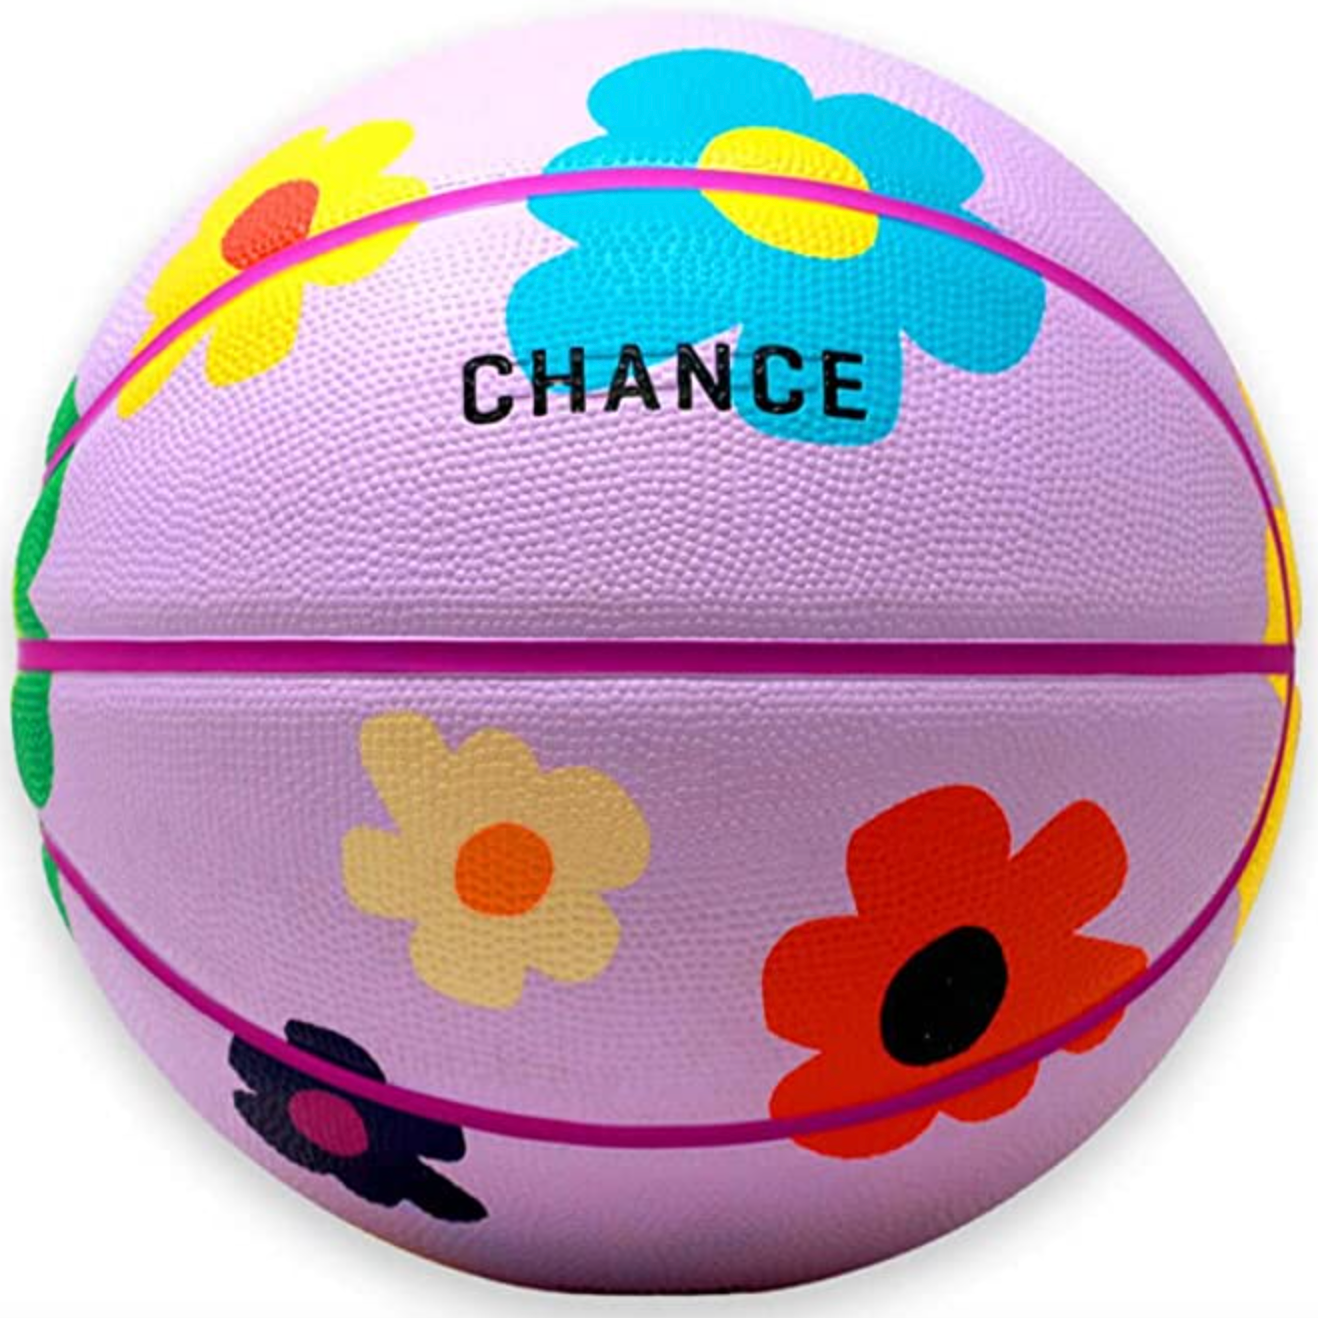 Chance Premium Rubber Outdoor/Indoor Basketball